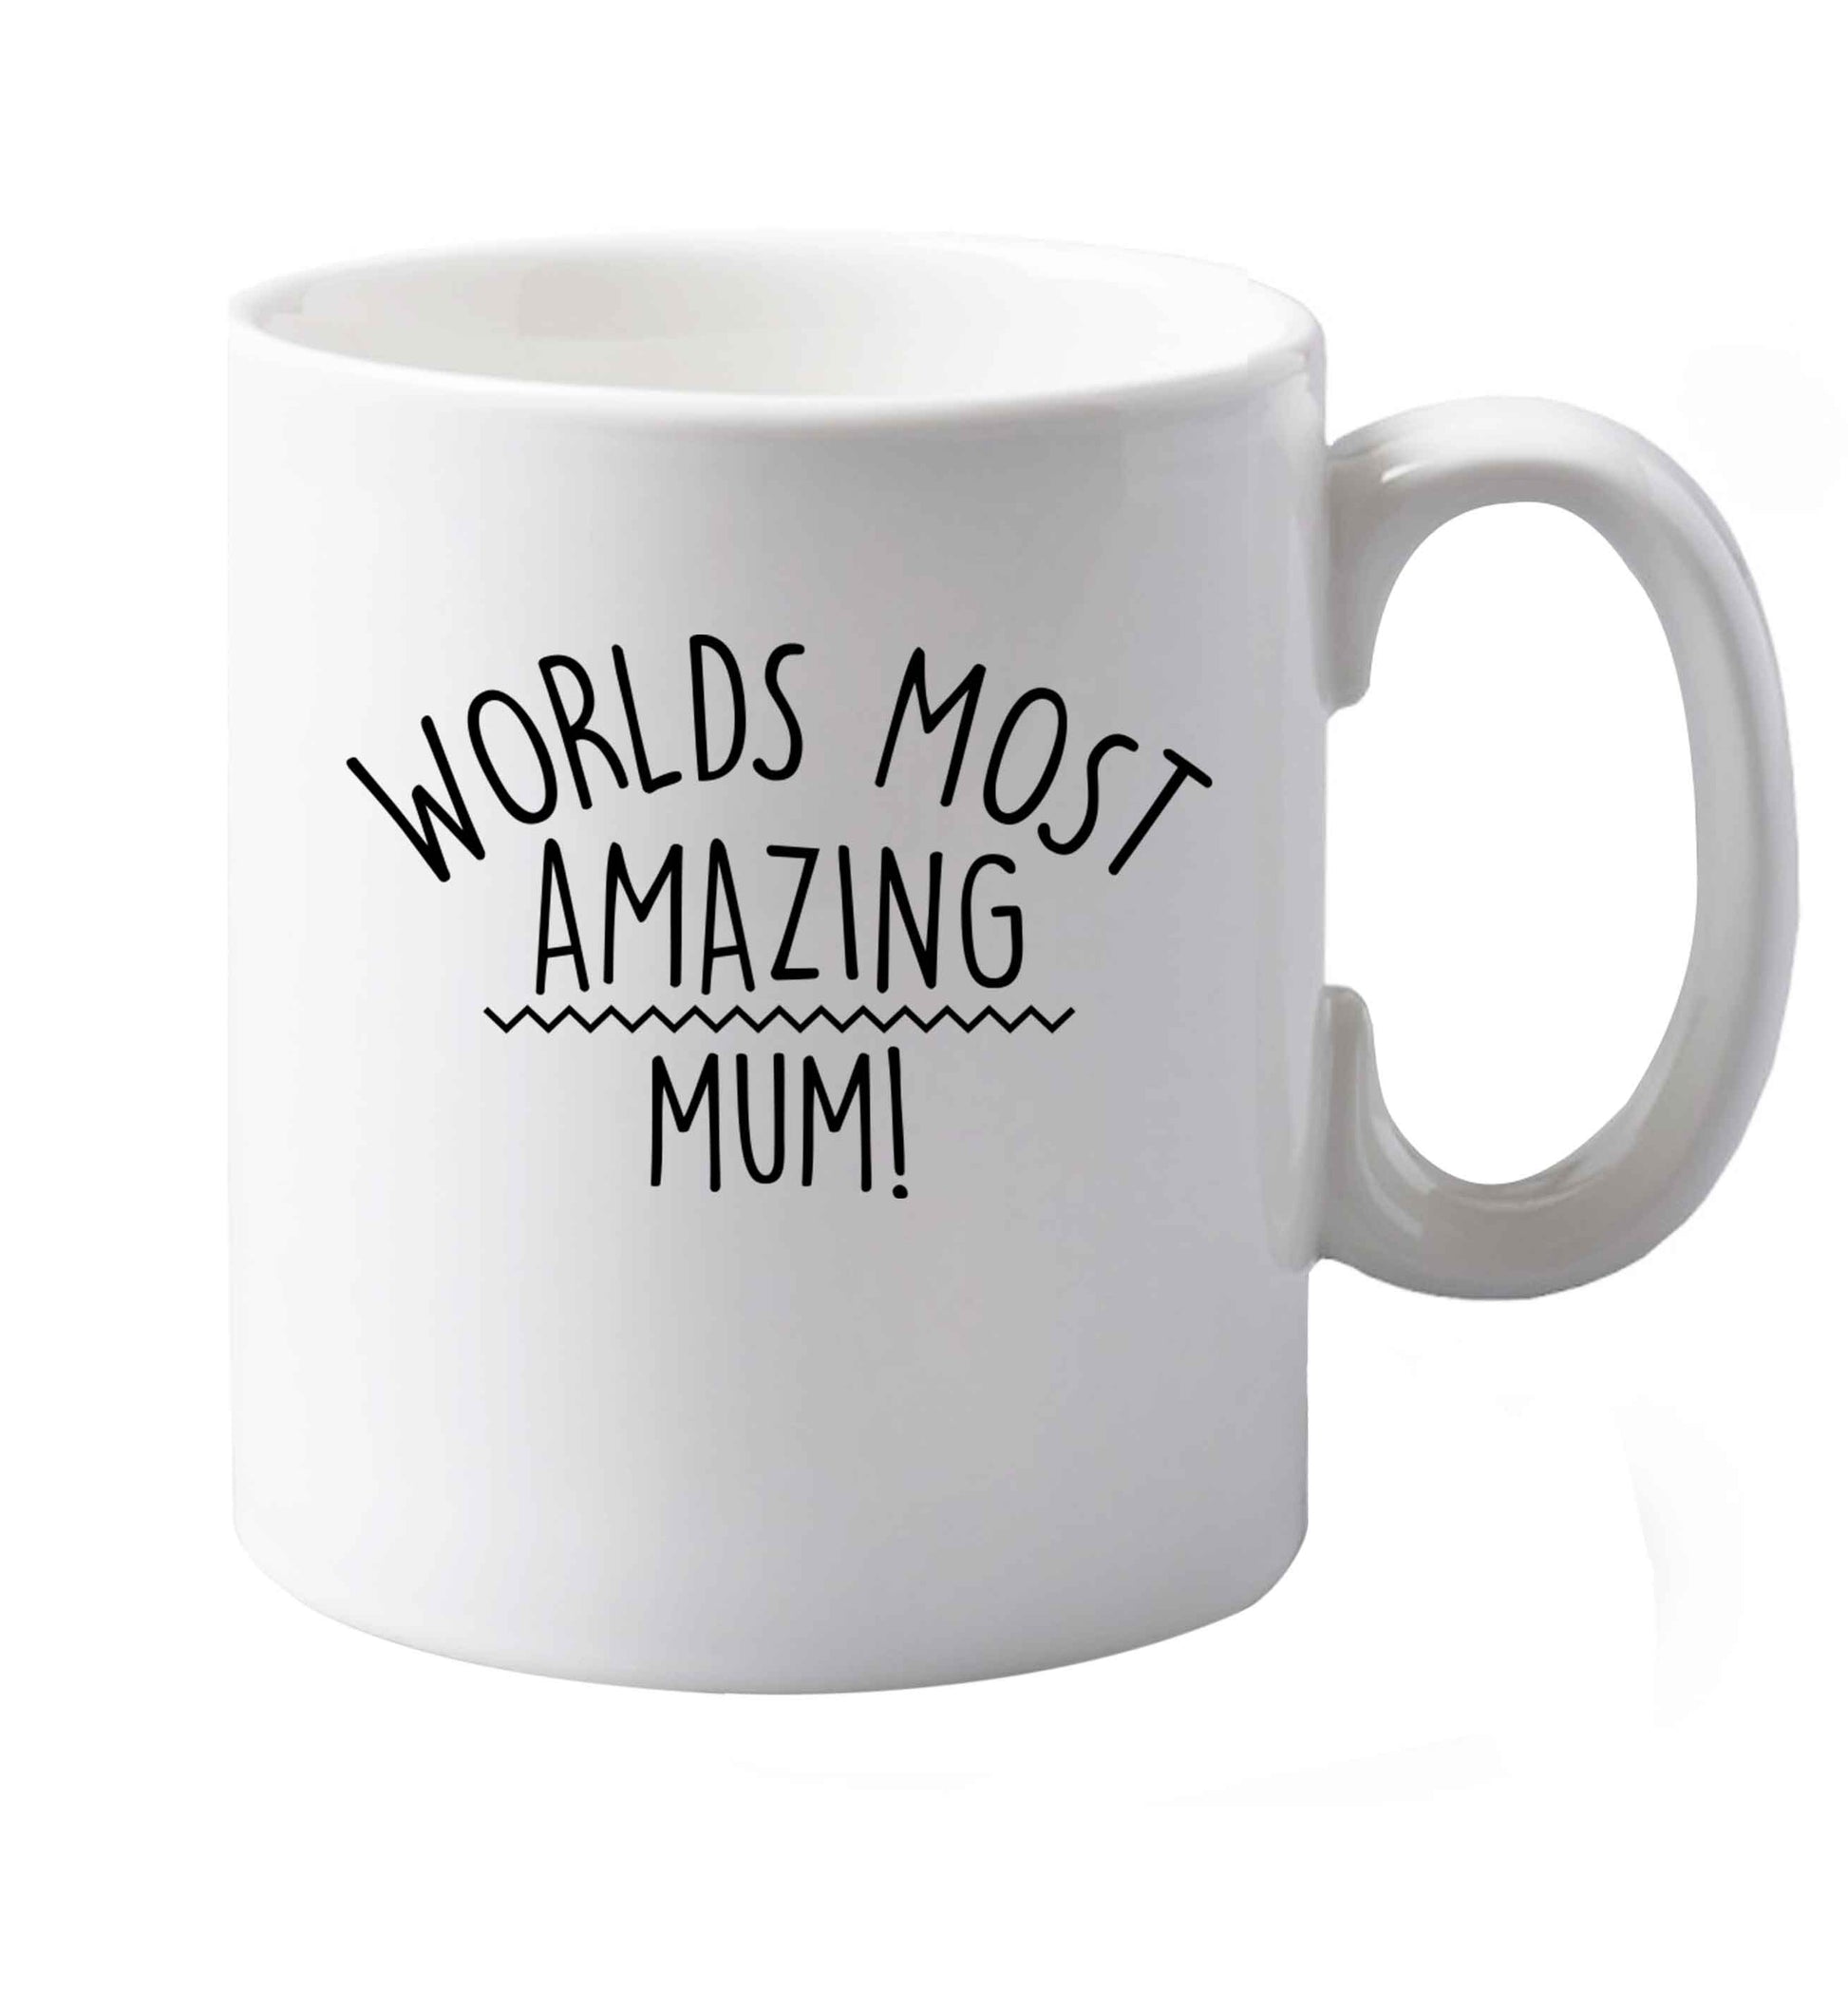 10 oz Worlds most amazing mum ceramic mug both sides